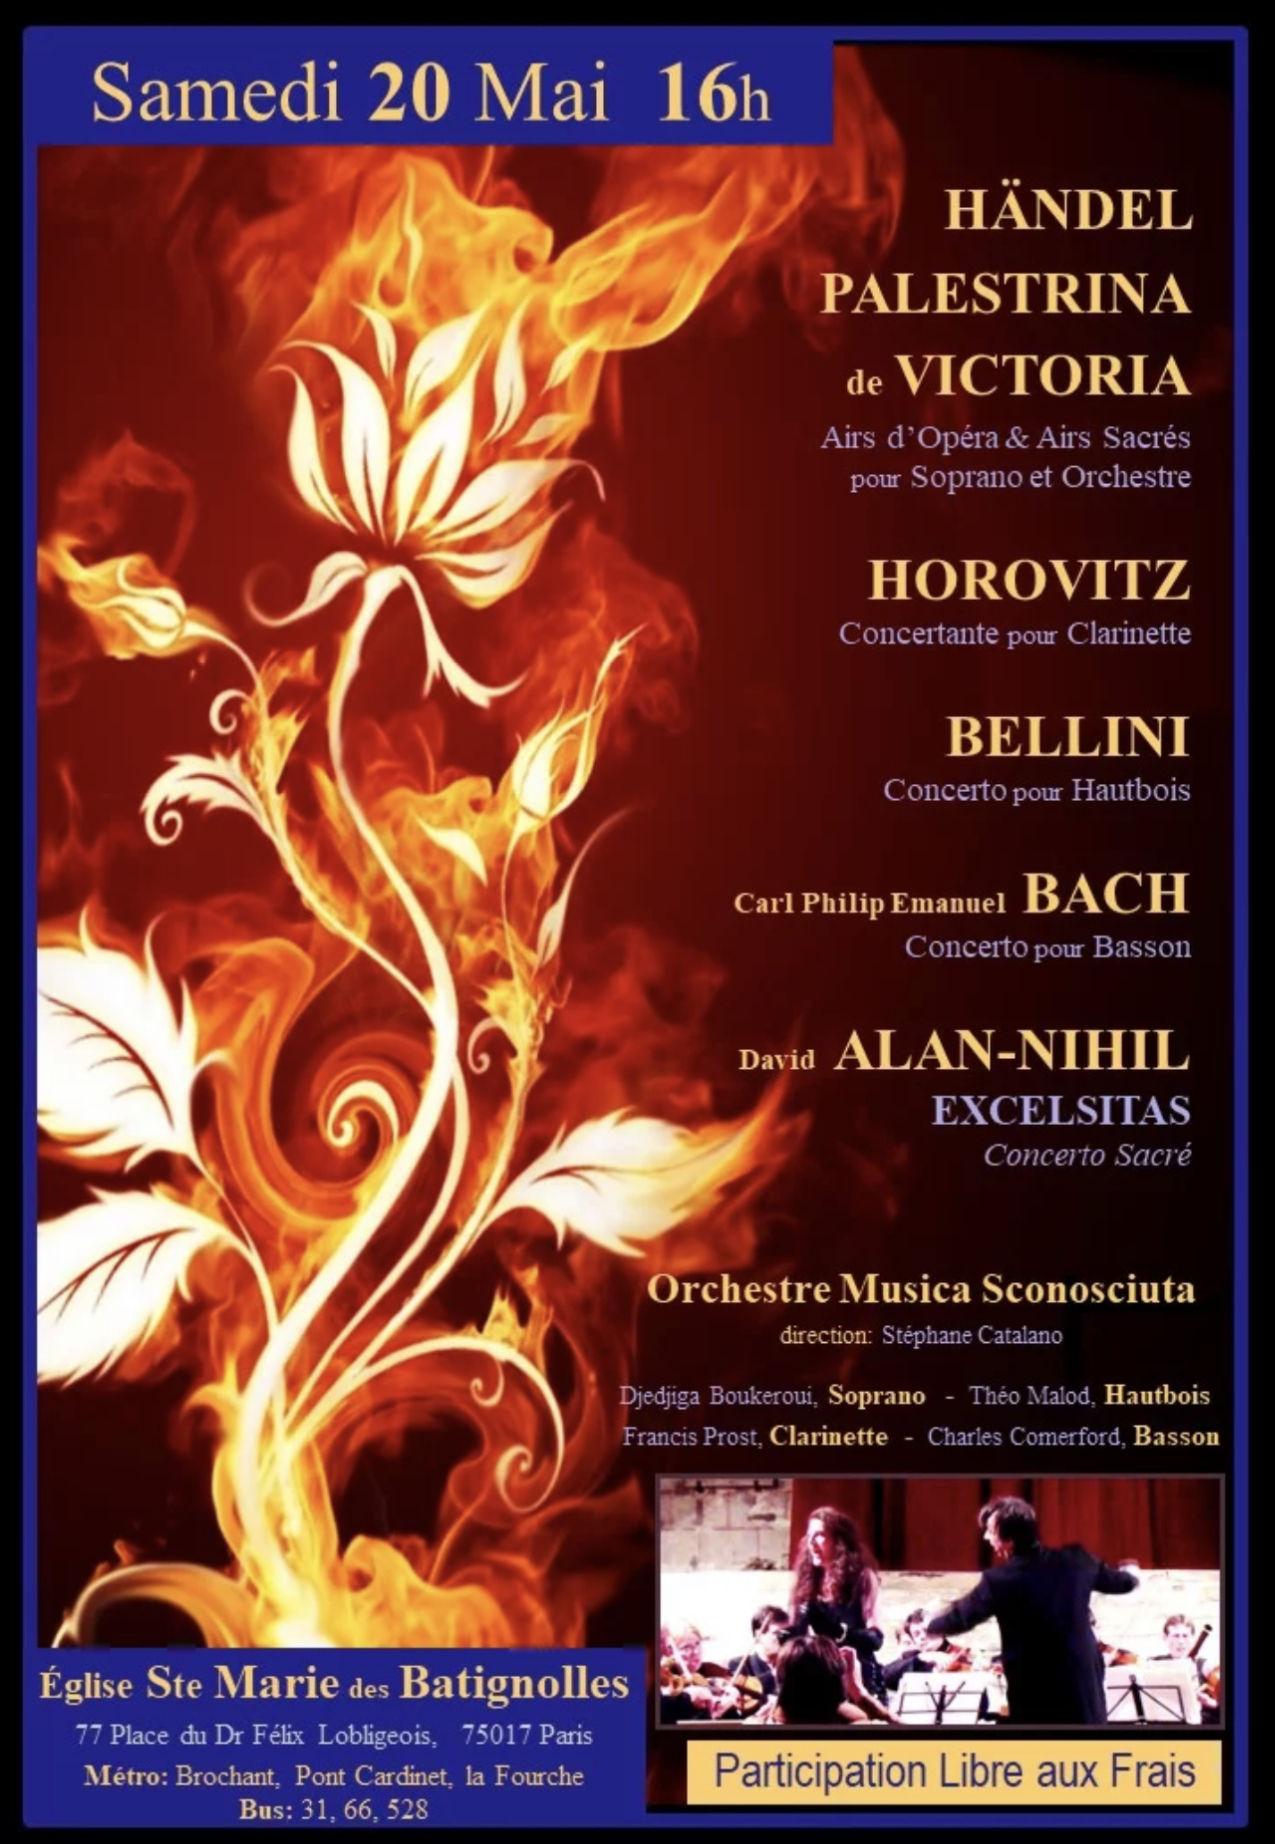 Concerto pour basson en La mineur de CPE Bach - Charles Comerford et l'orchestre Musica Sconosciuta